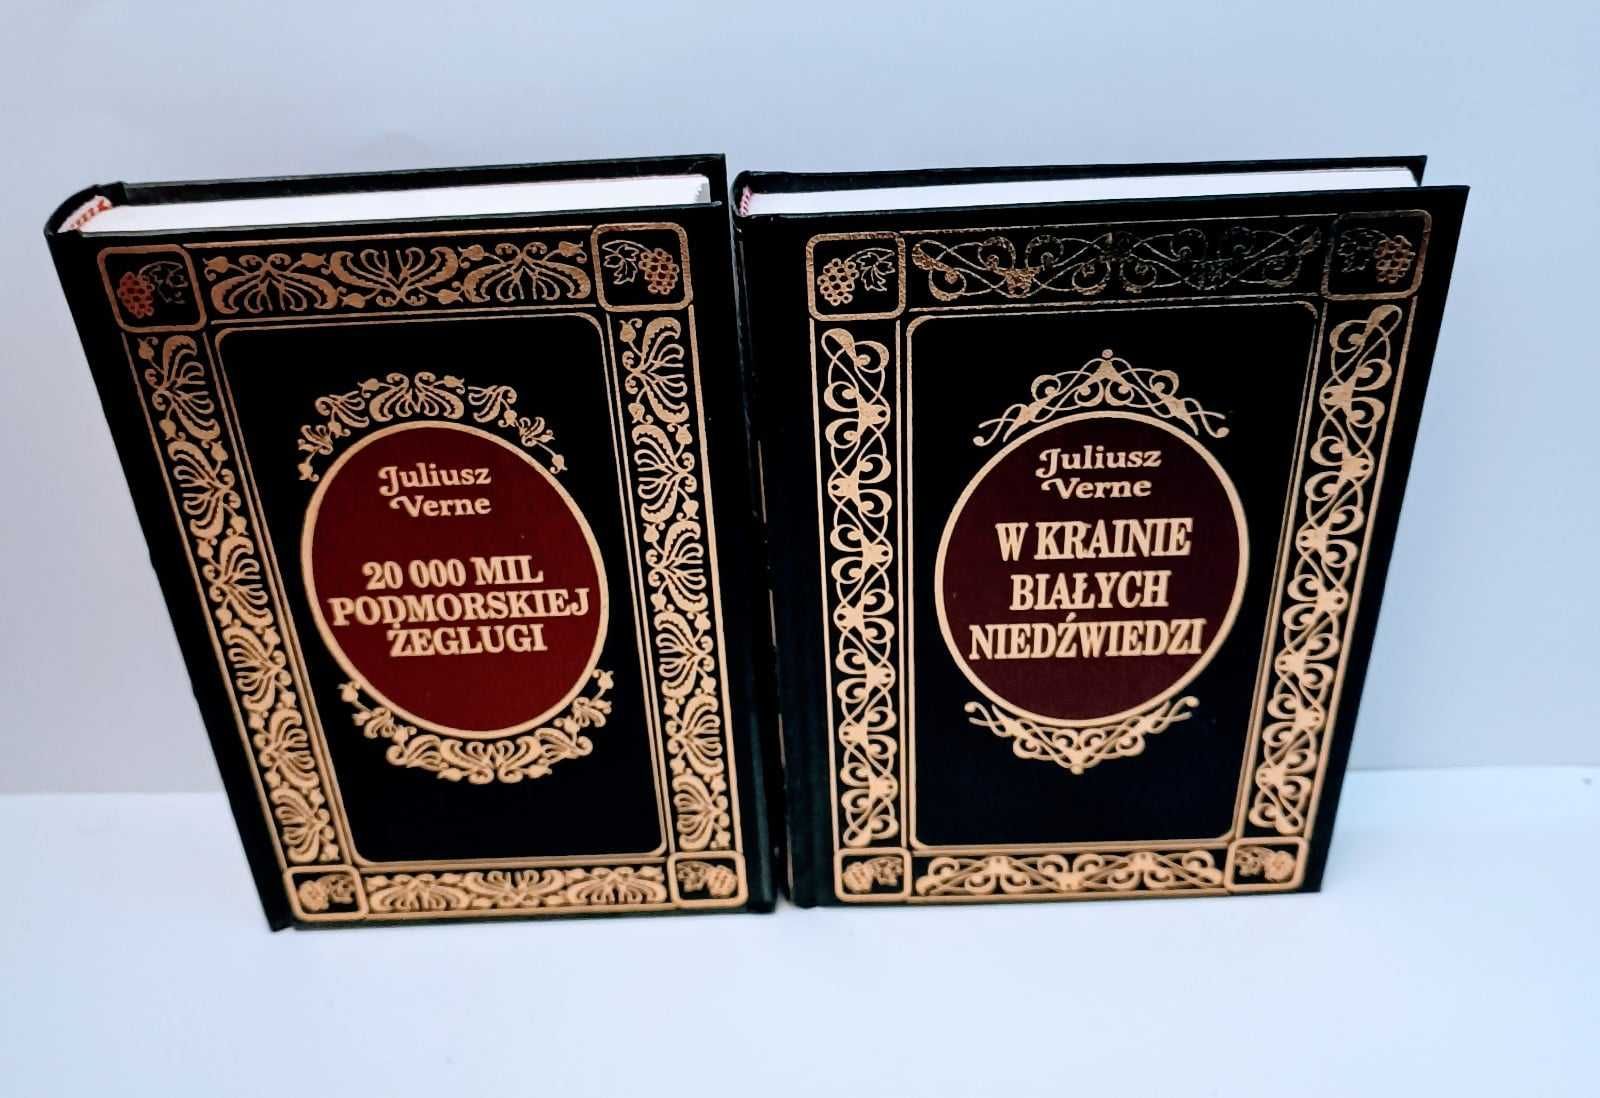 Verne - W krainie białych niedzwiedzi + 20 000 MIL Ex Libris Złote